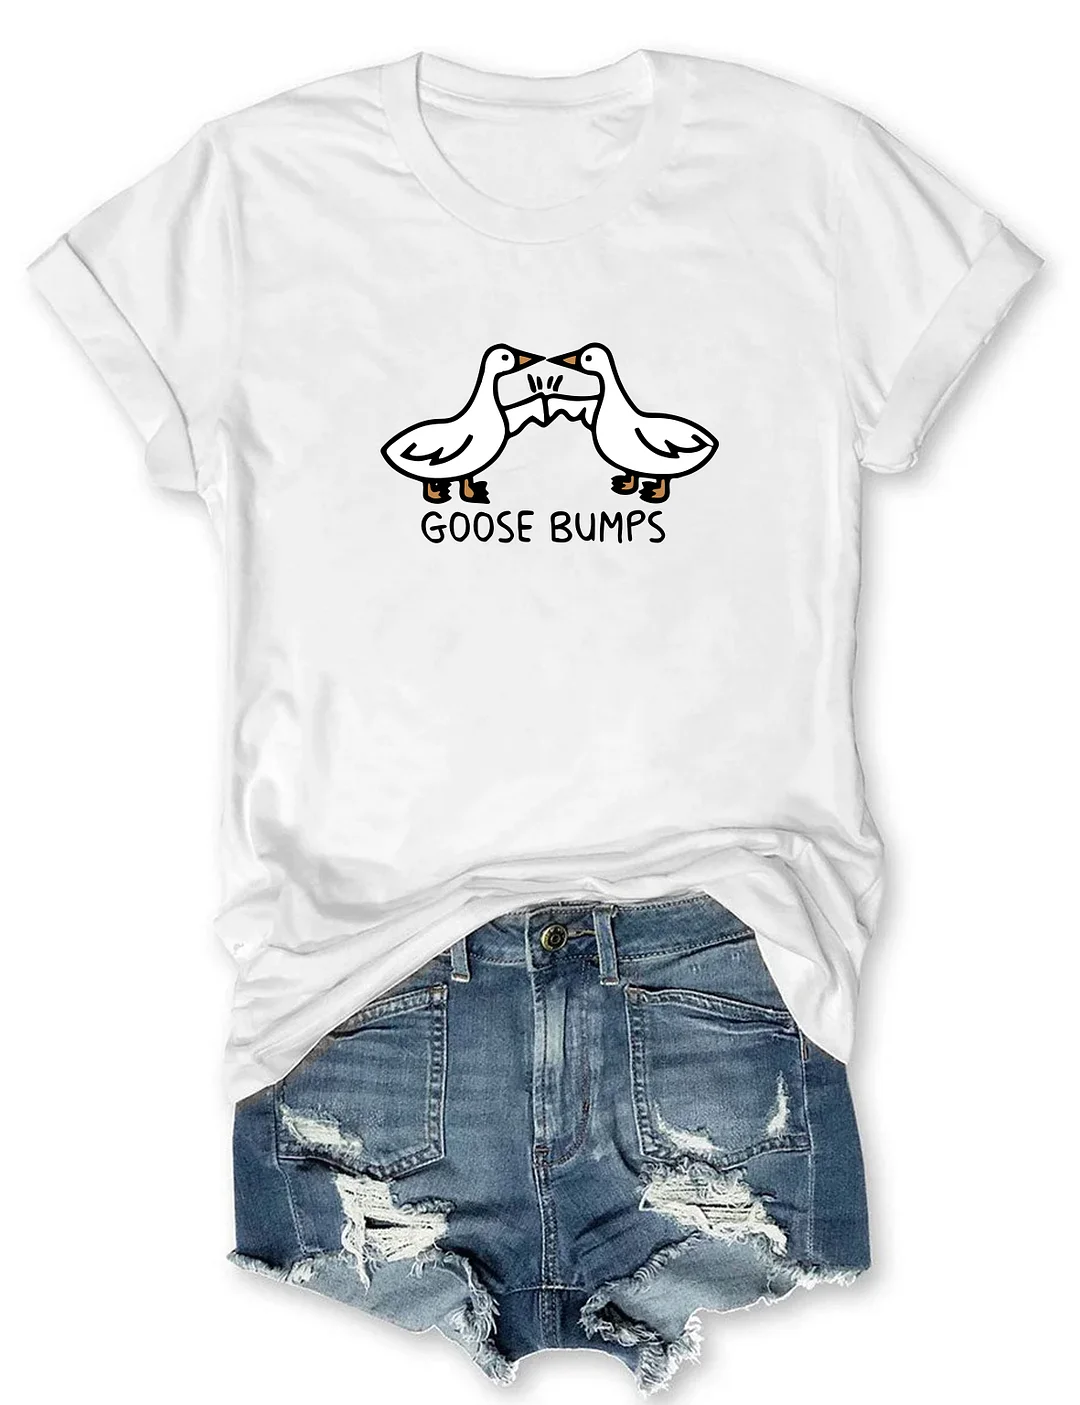 Goose bumps T-shirt